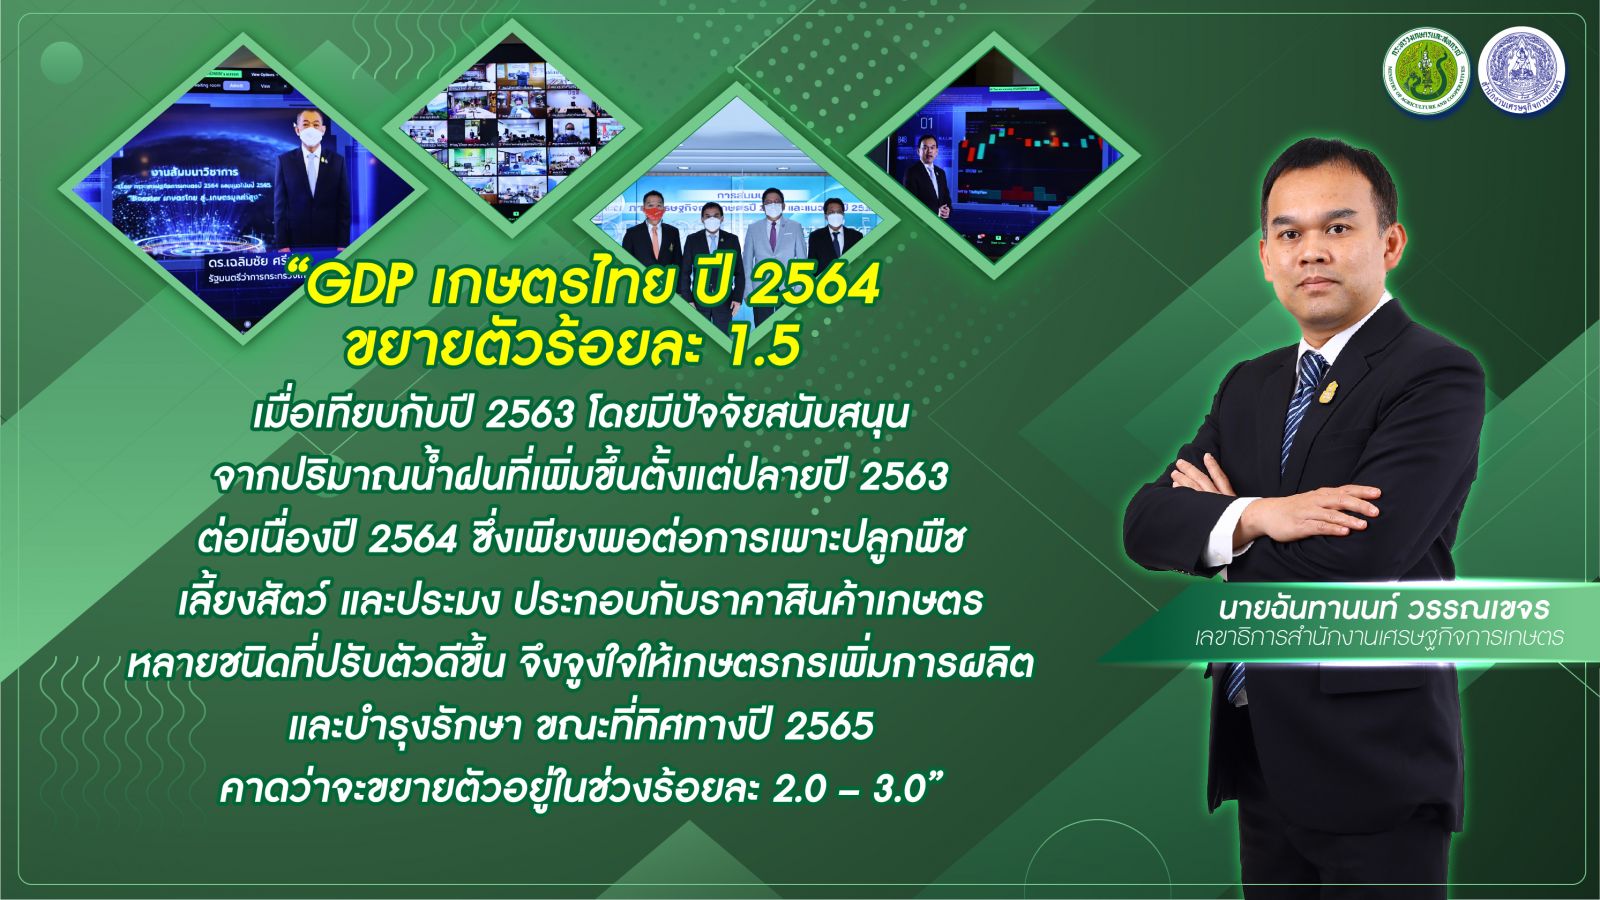 สศก. เปิดเวทีเสวนาออนไลน์ YEAR END  ‘Booster เกษตรไทย สู่ เกษตรมูลค่าสูง’   แถลงตัวเลข GDP เกษตร ปี 64 โต 1.5%